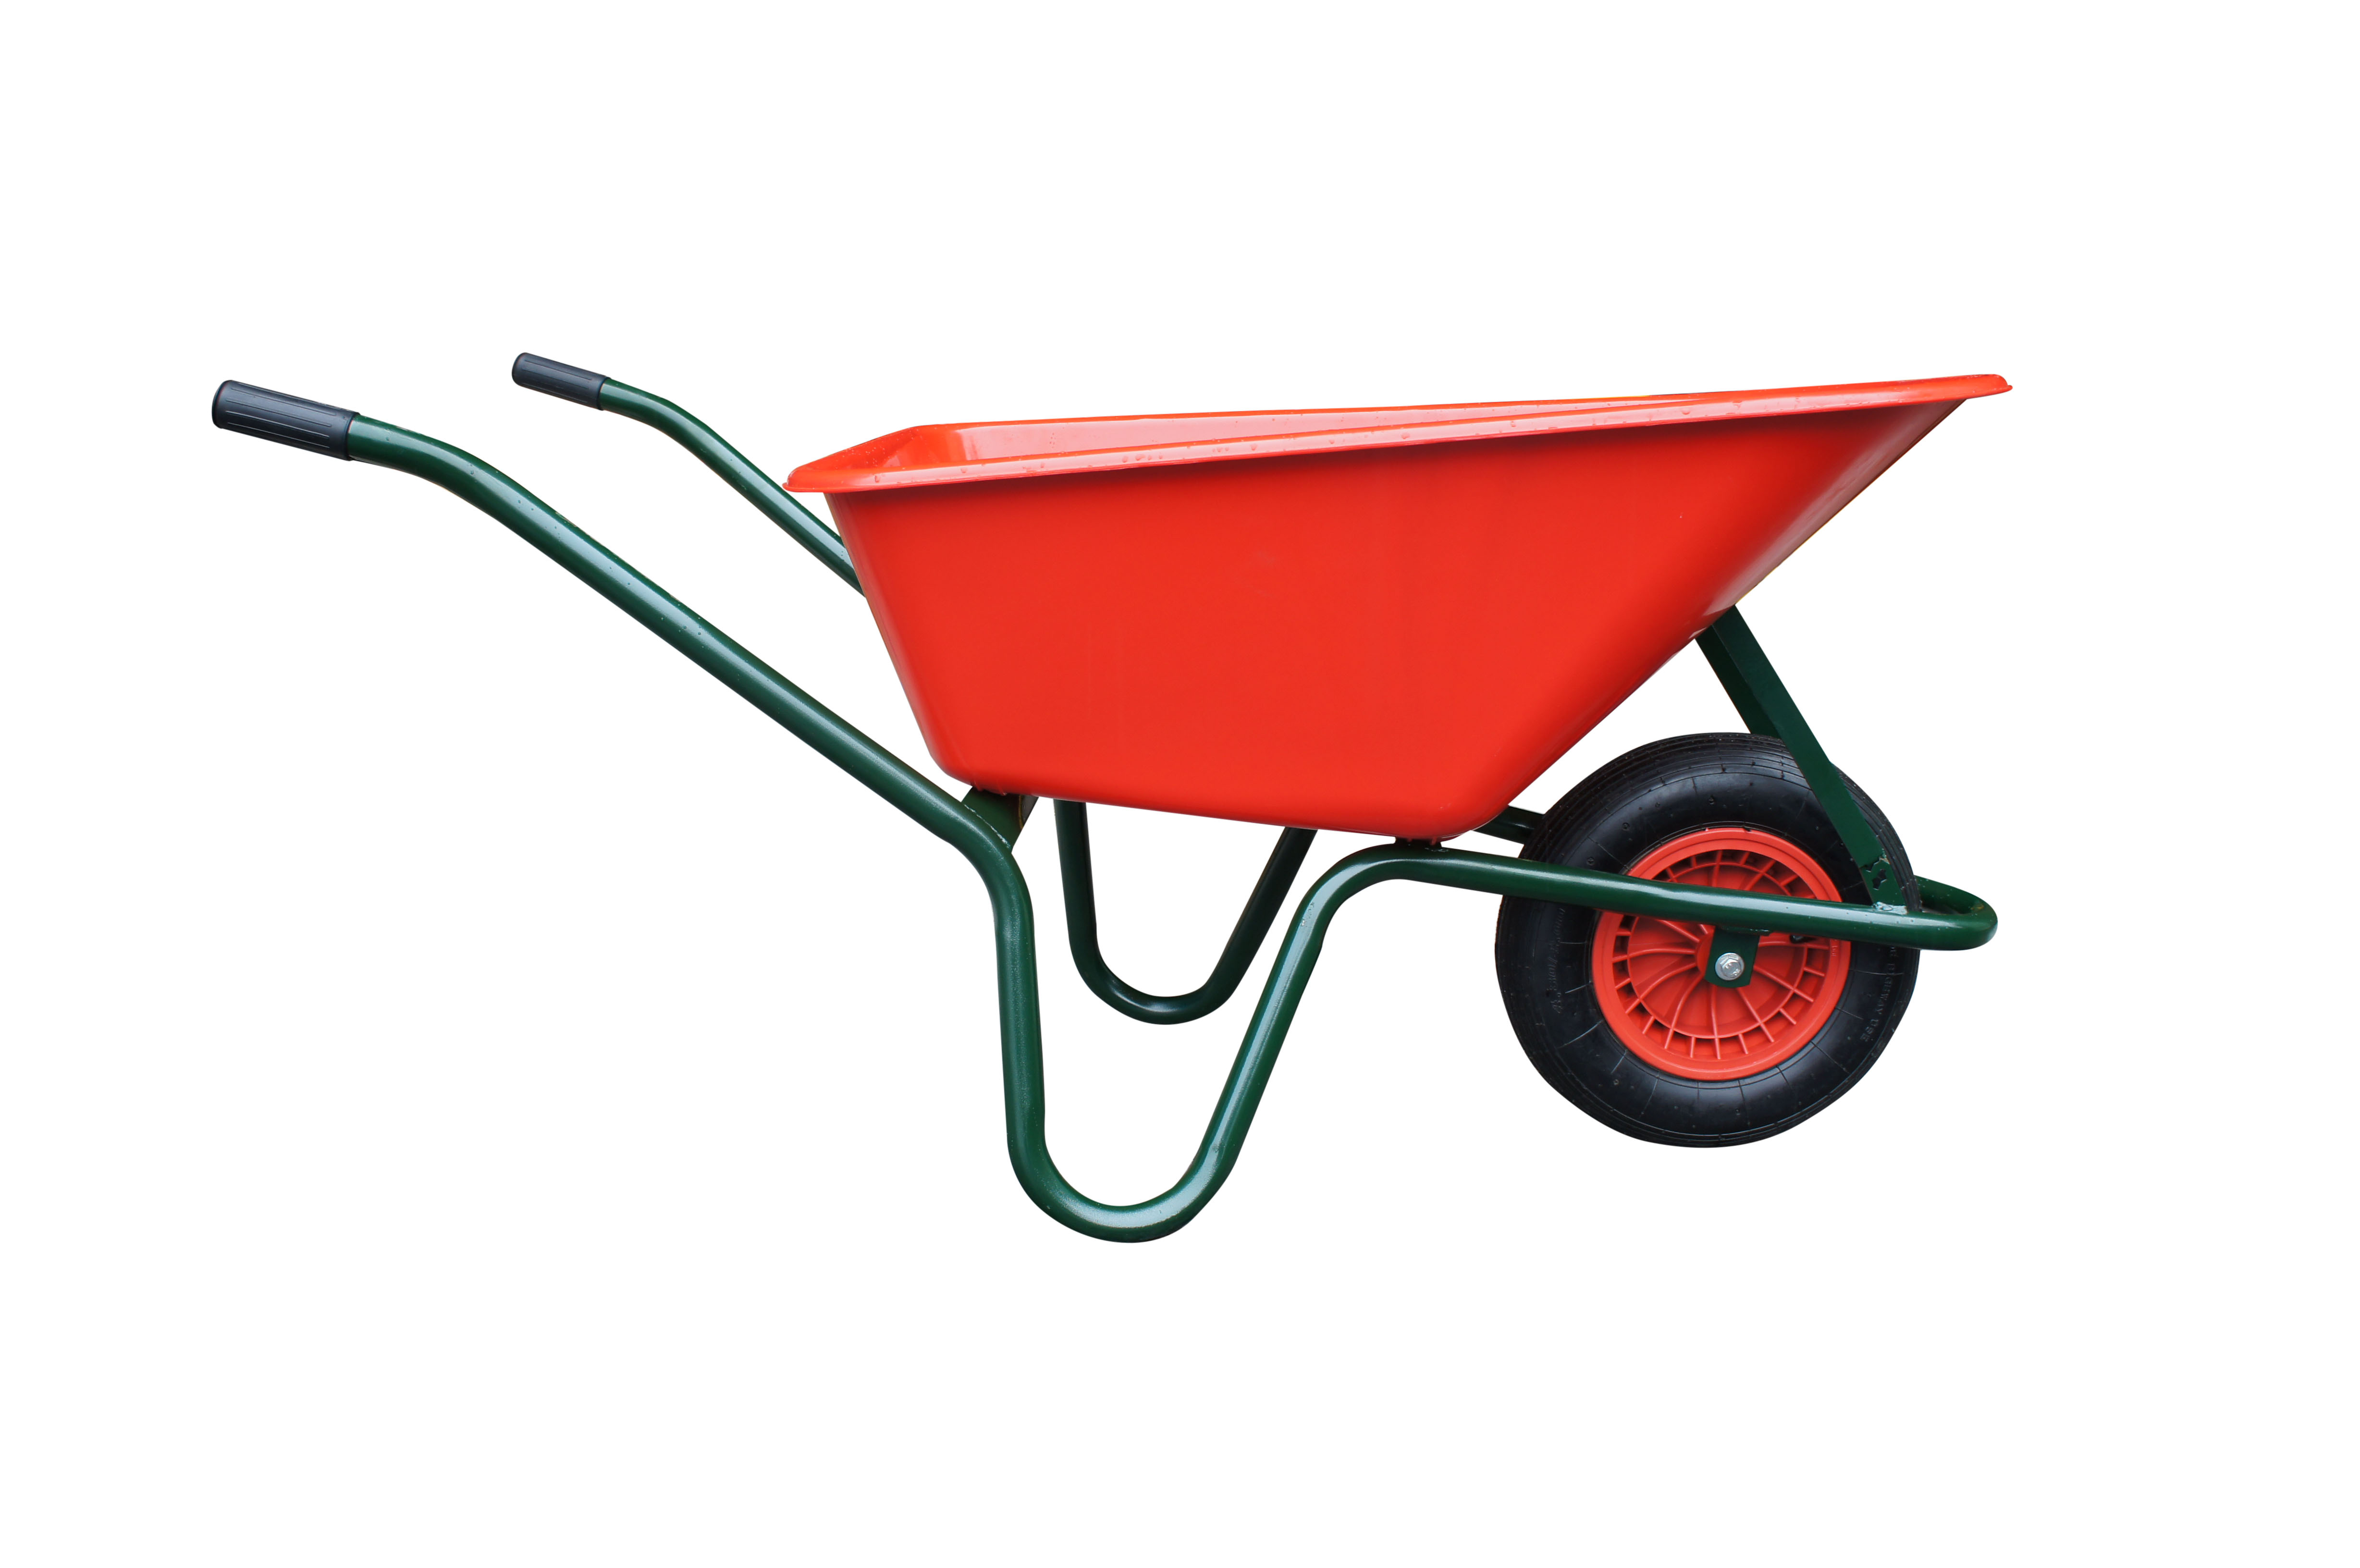 Fúrik LIVEX 100 l, koleso nafukovacie, rozložený - plastová korba červená, nosnosť 100 kg